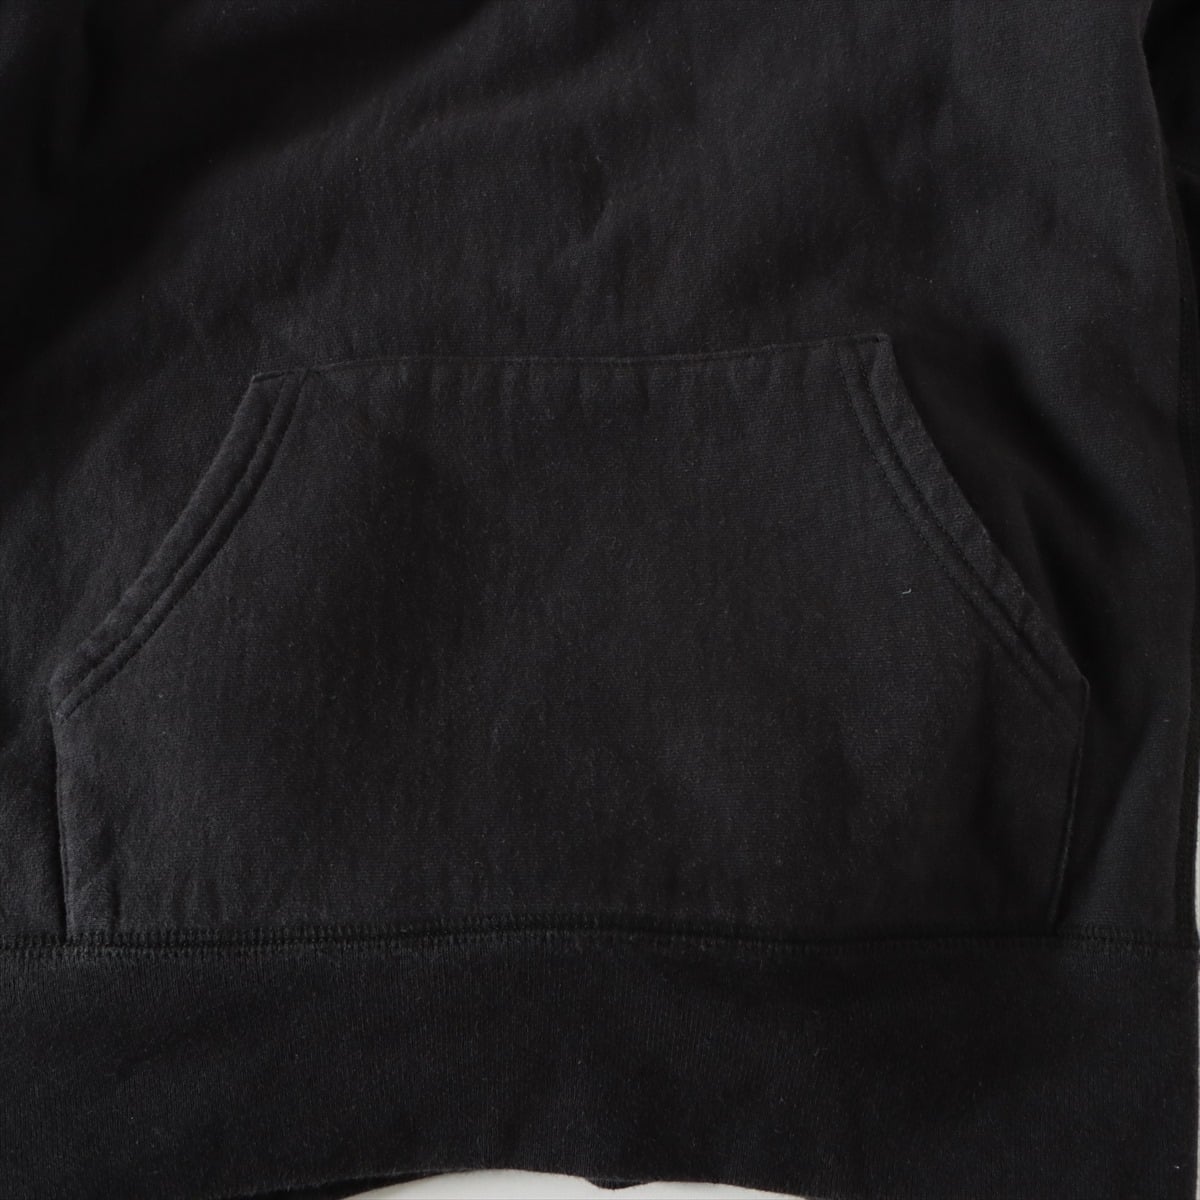 シュプリーム×スワロフスキー 19SS コットン パーカー S メンズ ブラック  Box Logo Hooded Sweatshirt  25th Anniversary